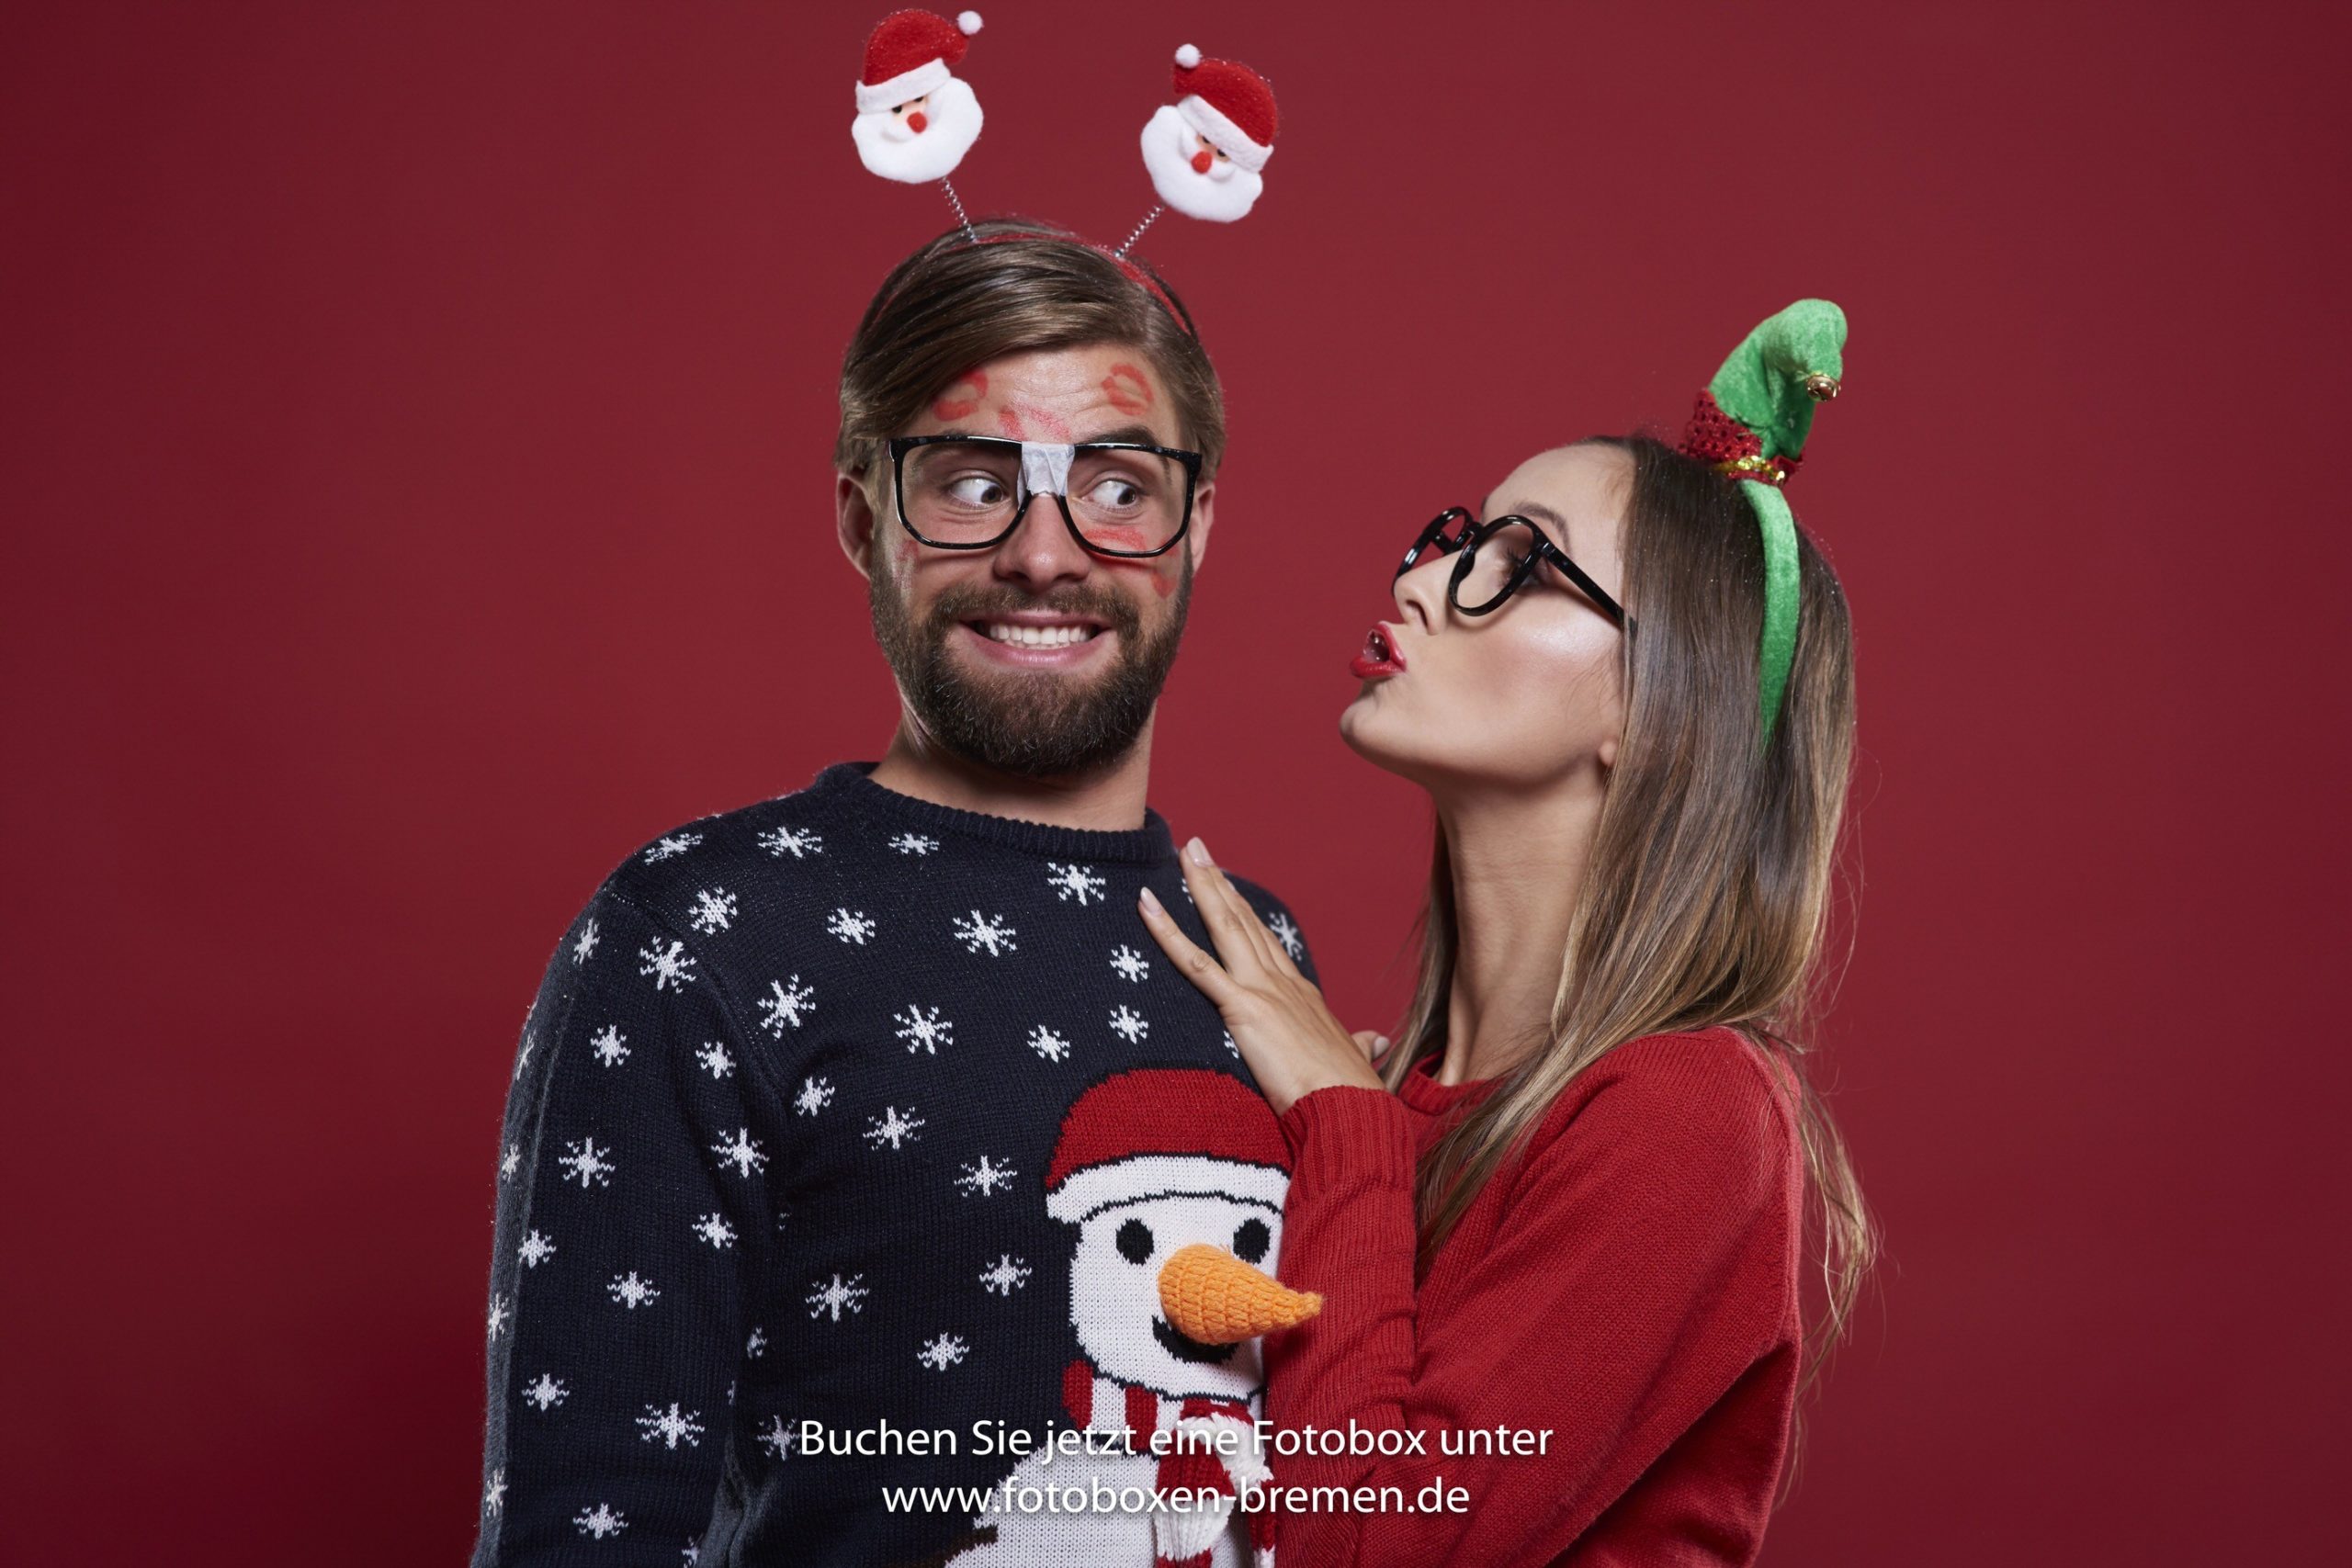 Frau und Mann machen lustige Fotos vor der Fotobox auf der Weihnachtsfeier